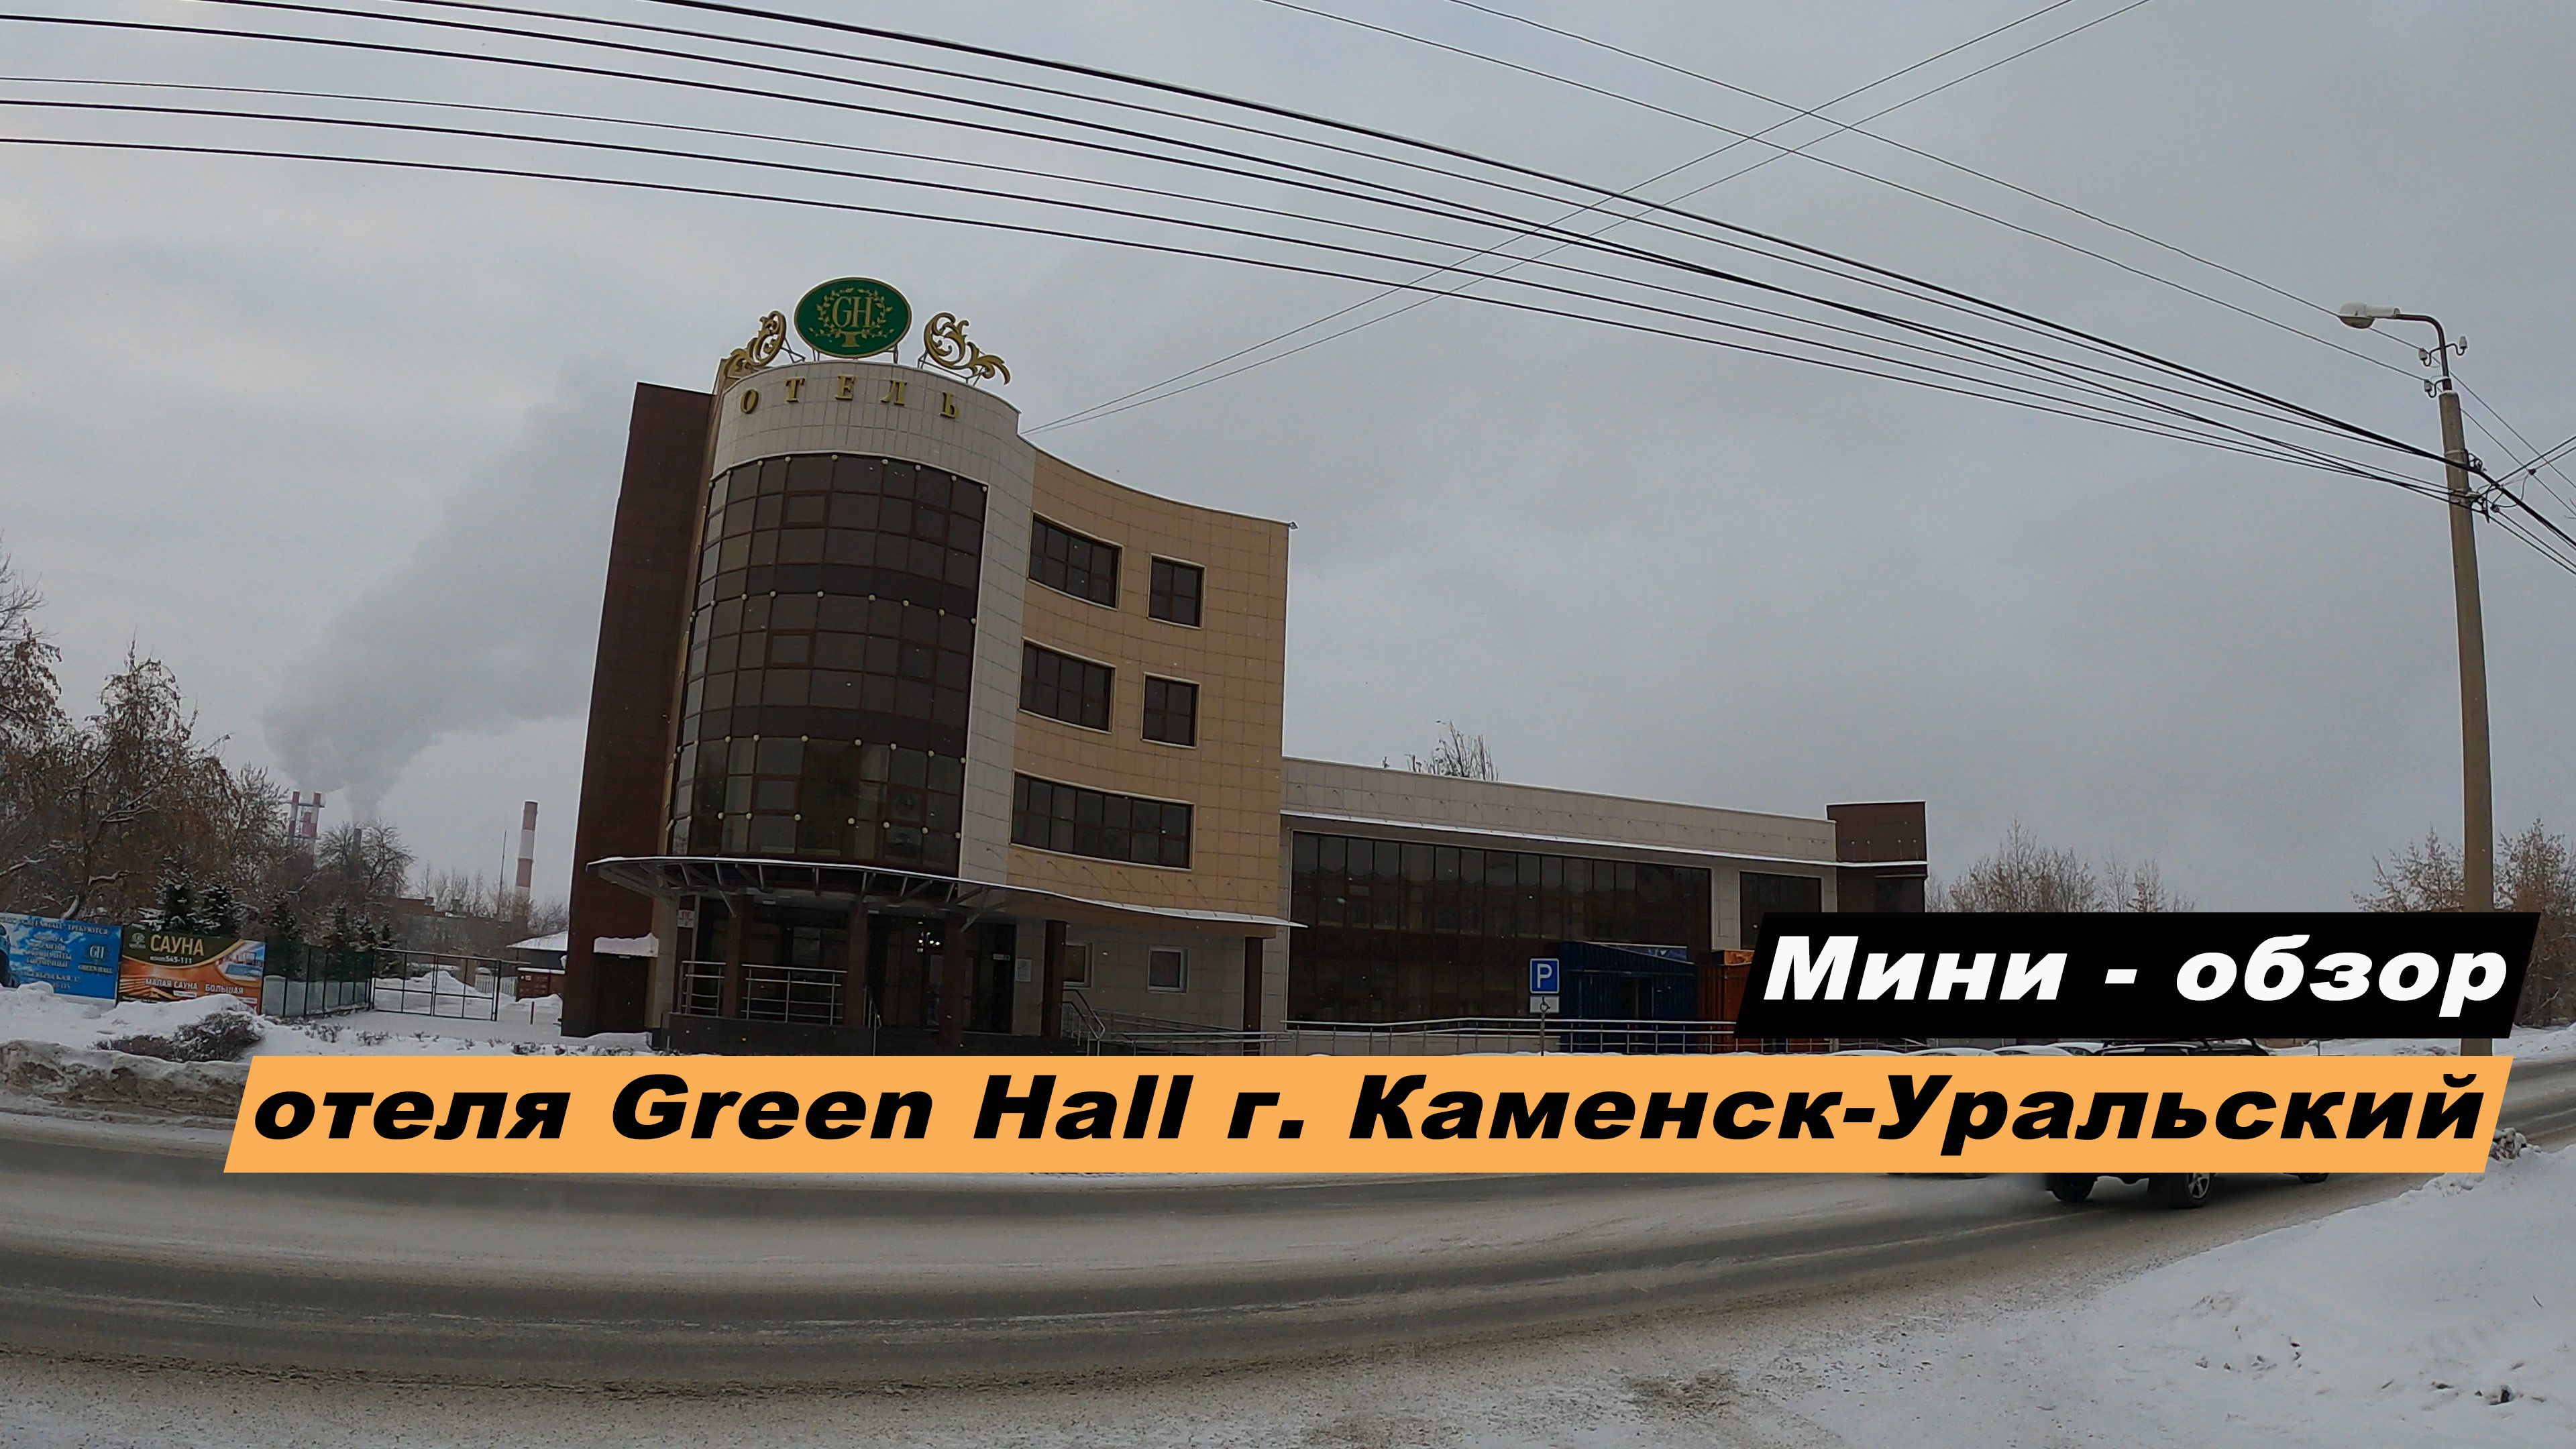 Мини-обзор отеля "Green Hall Hotel" (Грин Холл) 4* в г. Каменске-Уральском, Свердловской области.